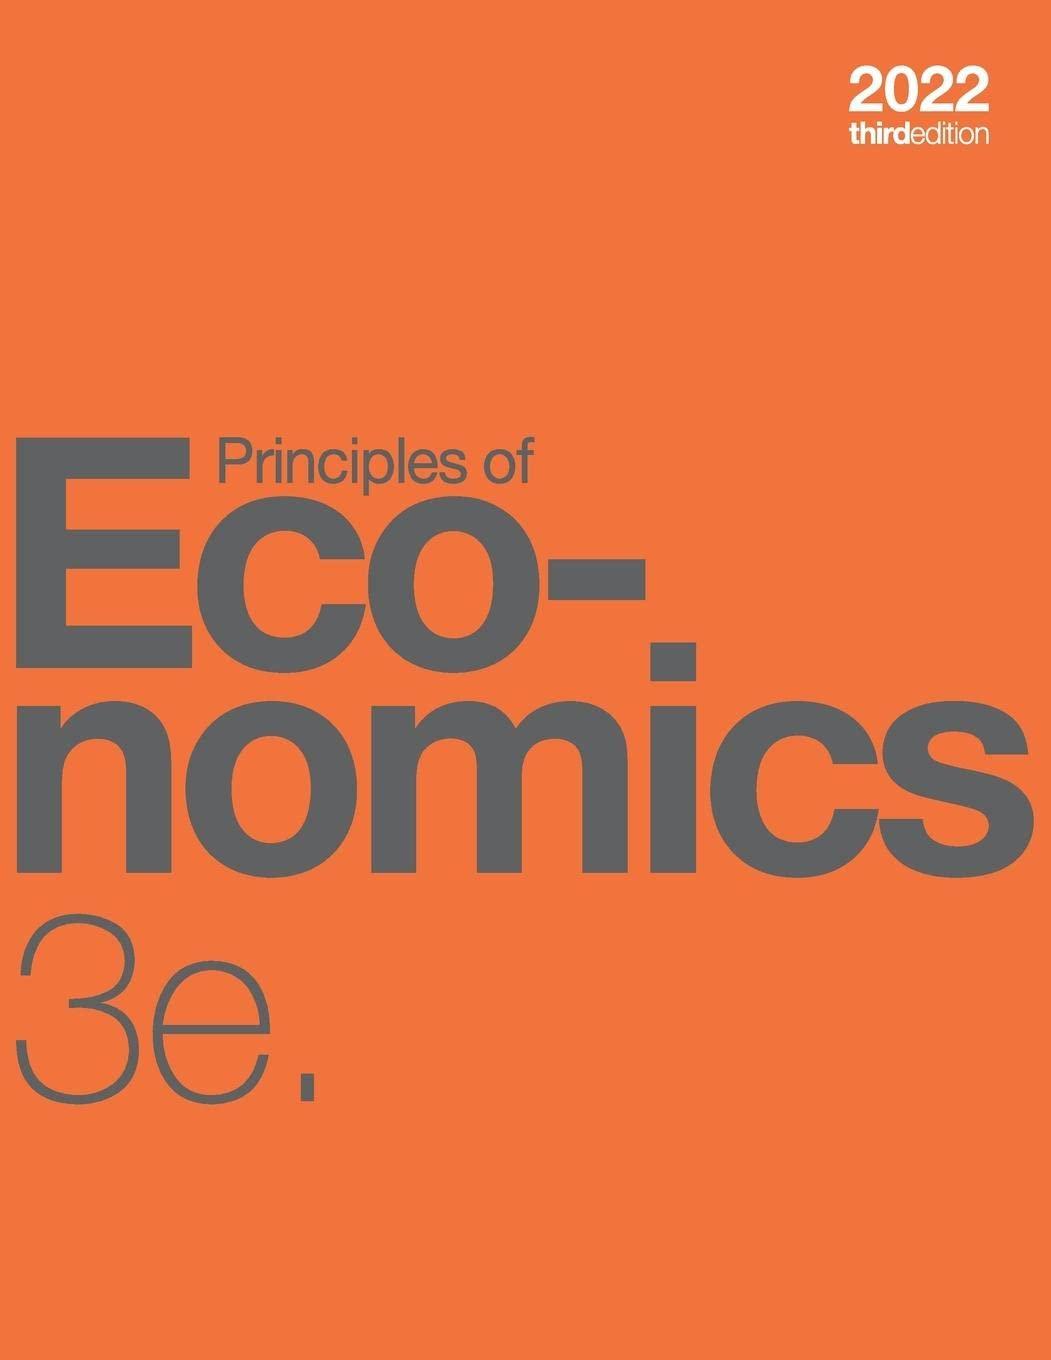 principles of economics 3e 3rd edition 2022 steven a greenlaw, david shapiro, daniel macdonald 1738959279,